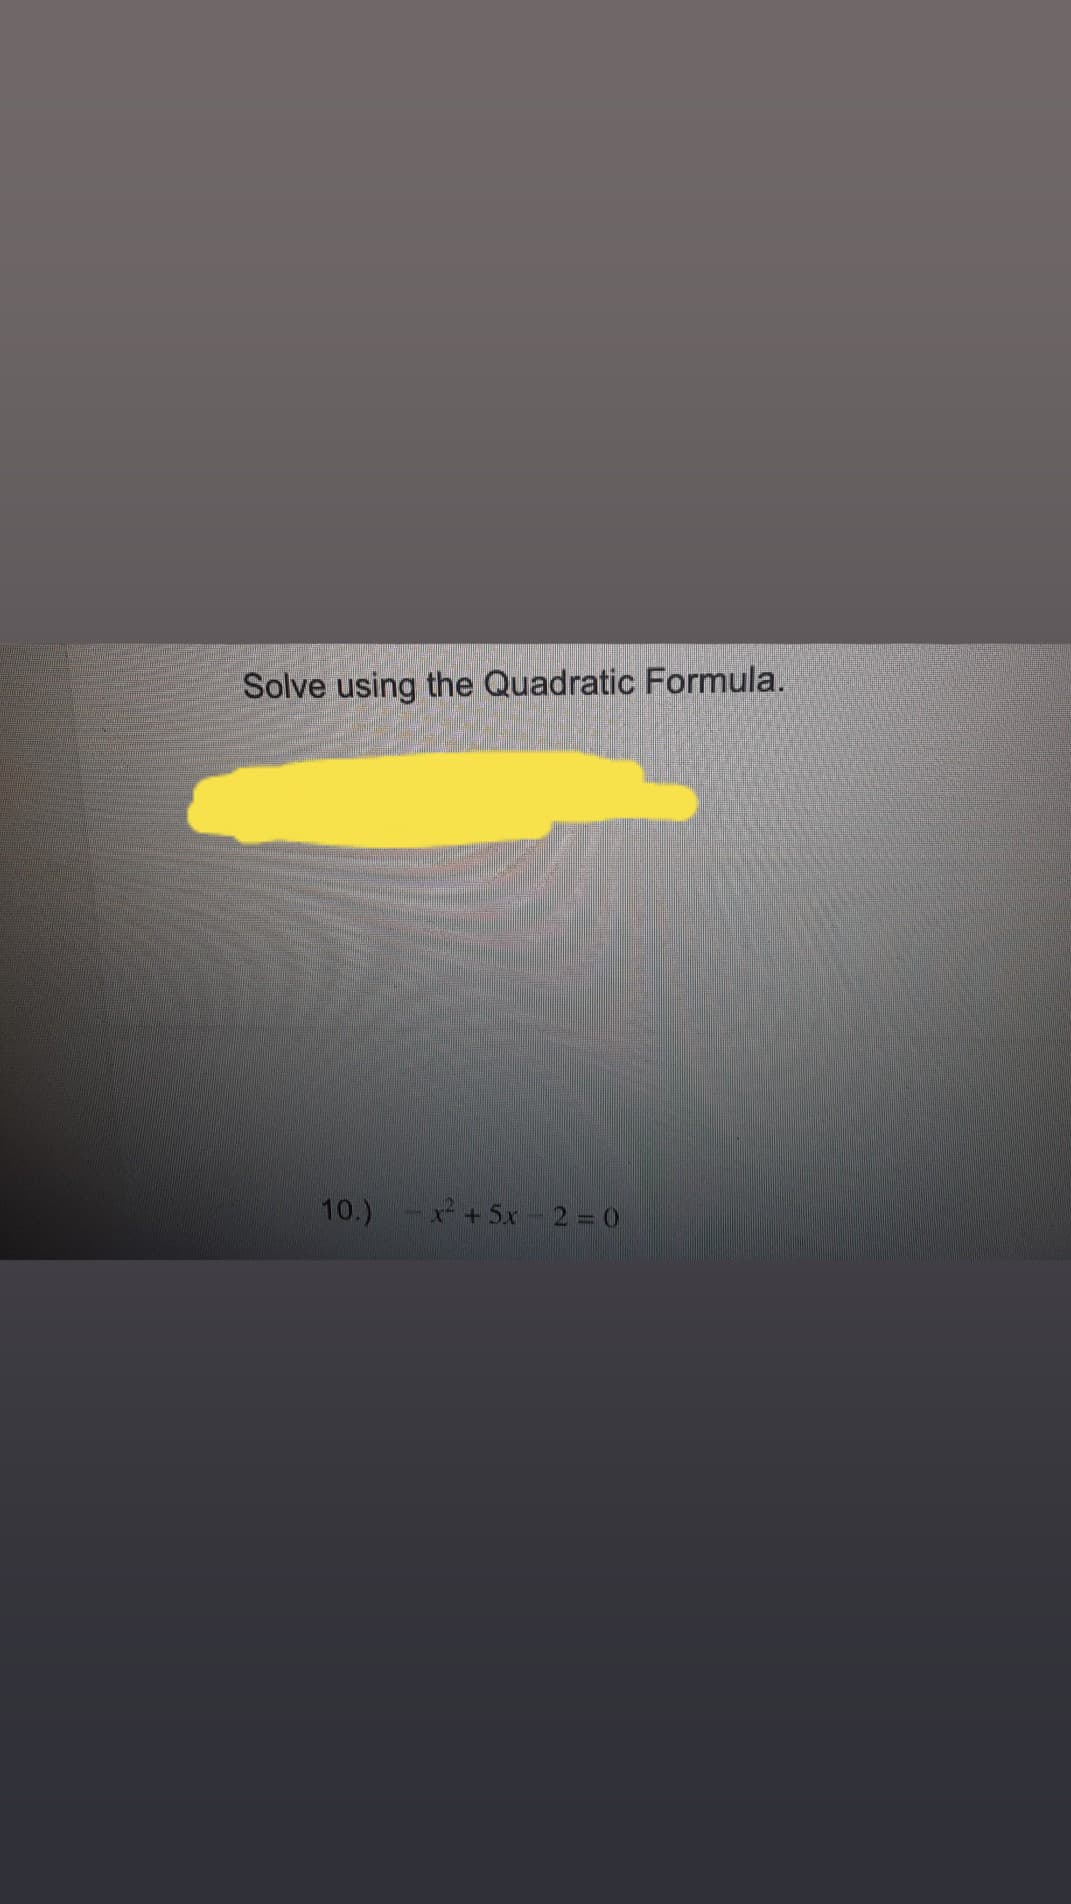 Solve using the Quadratic Formula.
10.)
+5x-2 = 0
